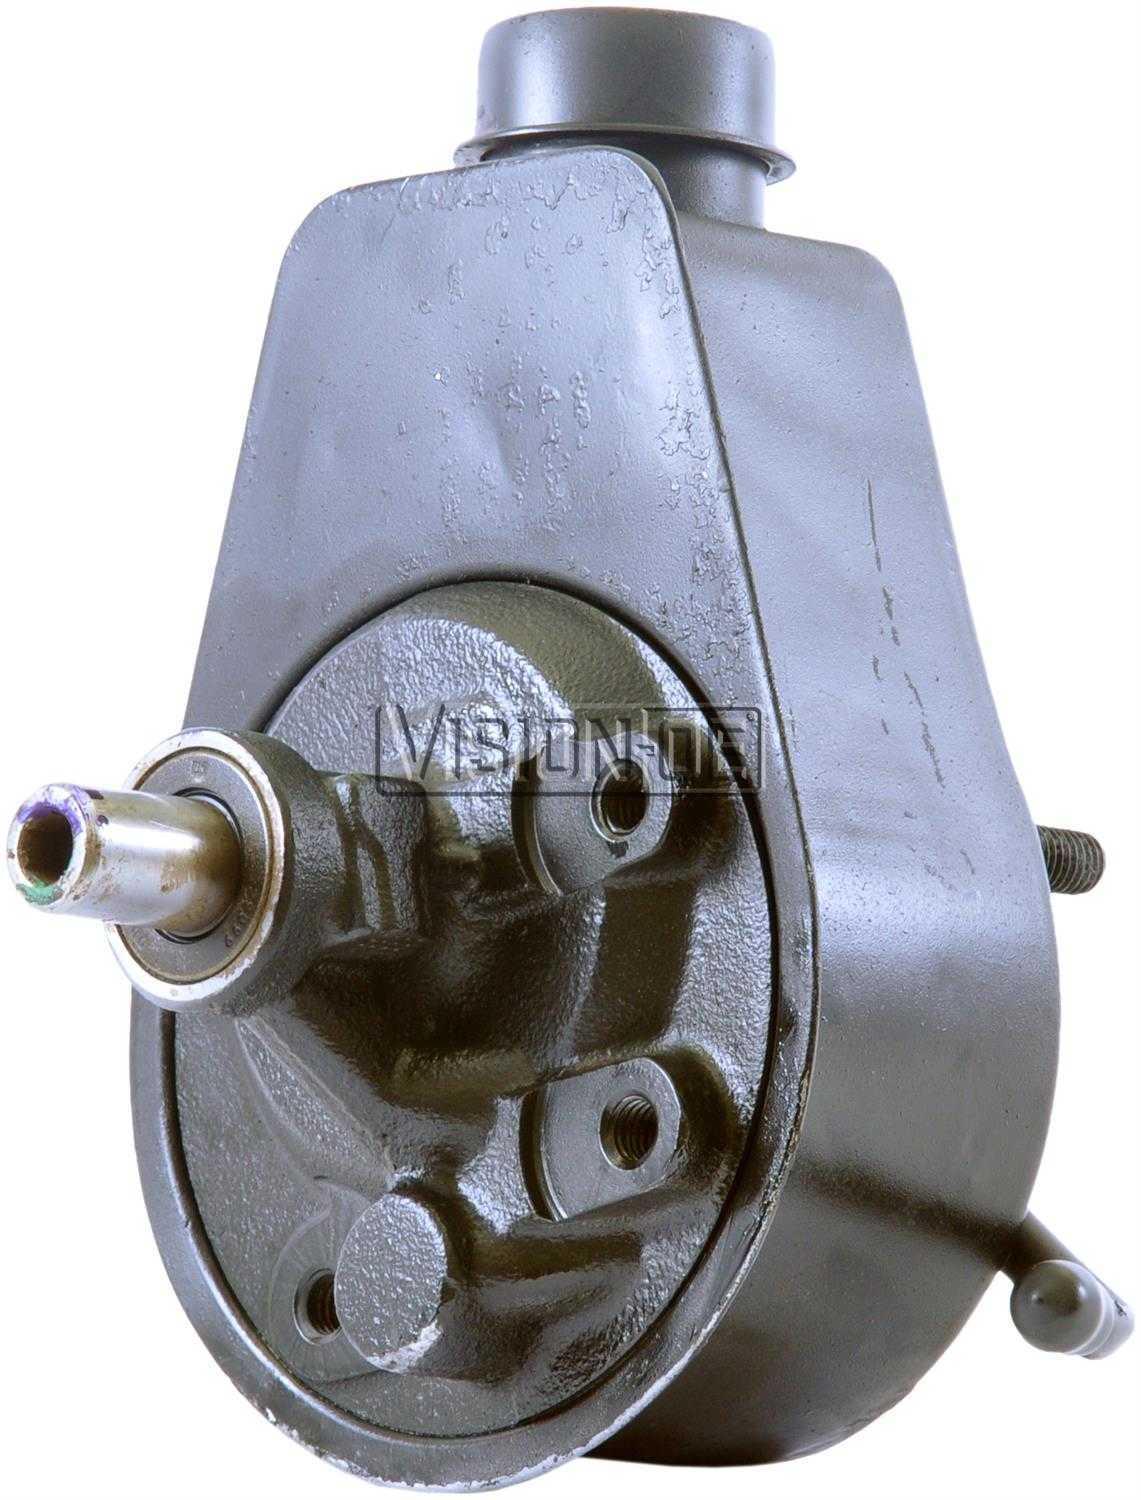 VISION-OE - Reman Power Steering Pump - VOE 731-2156